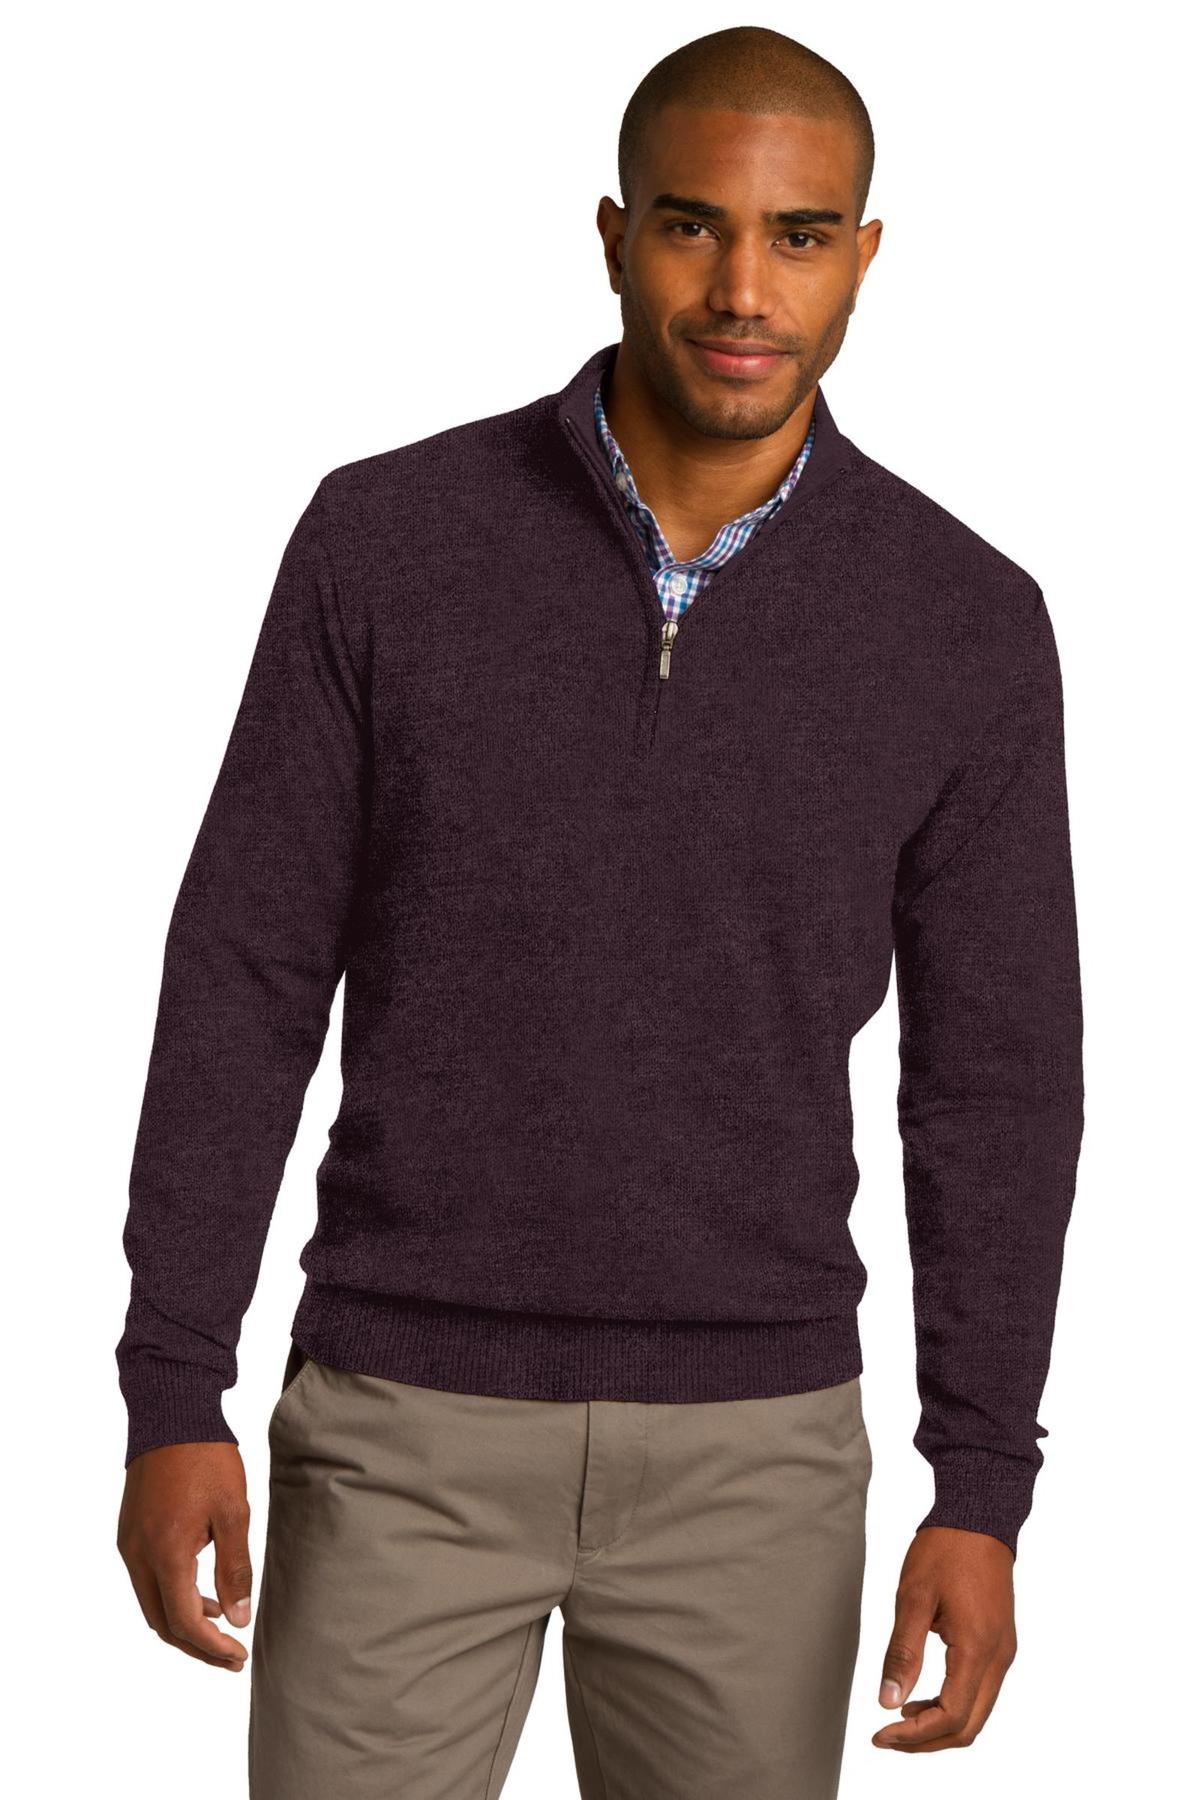 Port Authority Embroidered Men's 1/2 Zip Sweater | Sweatshirts ...